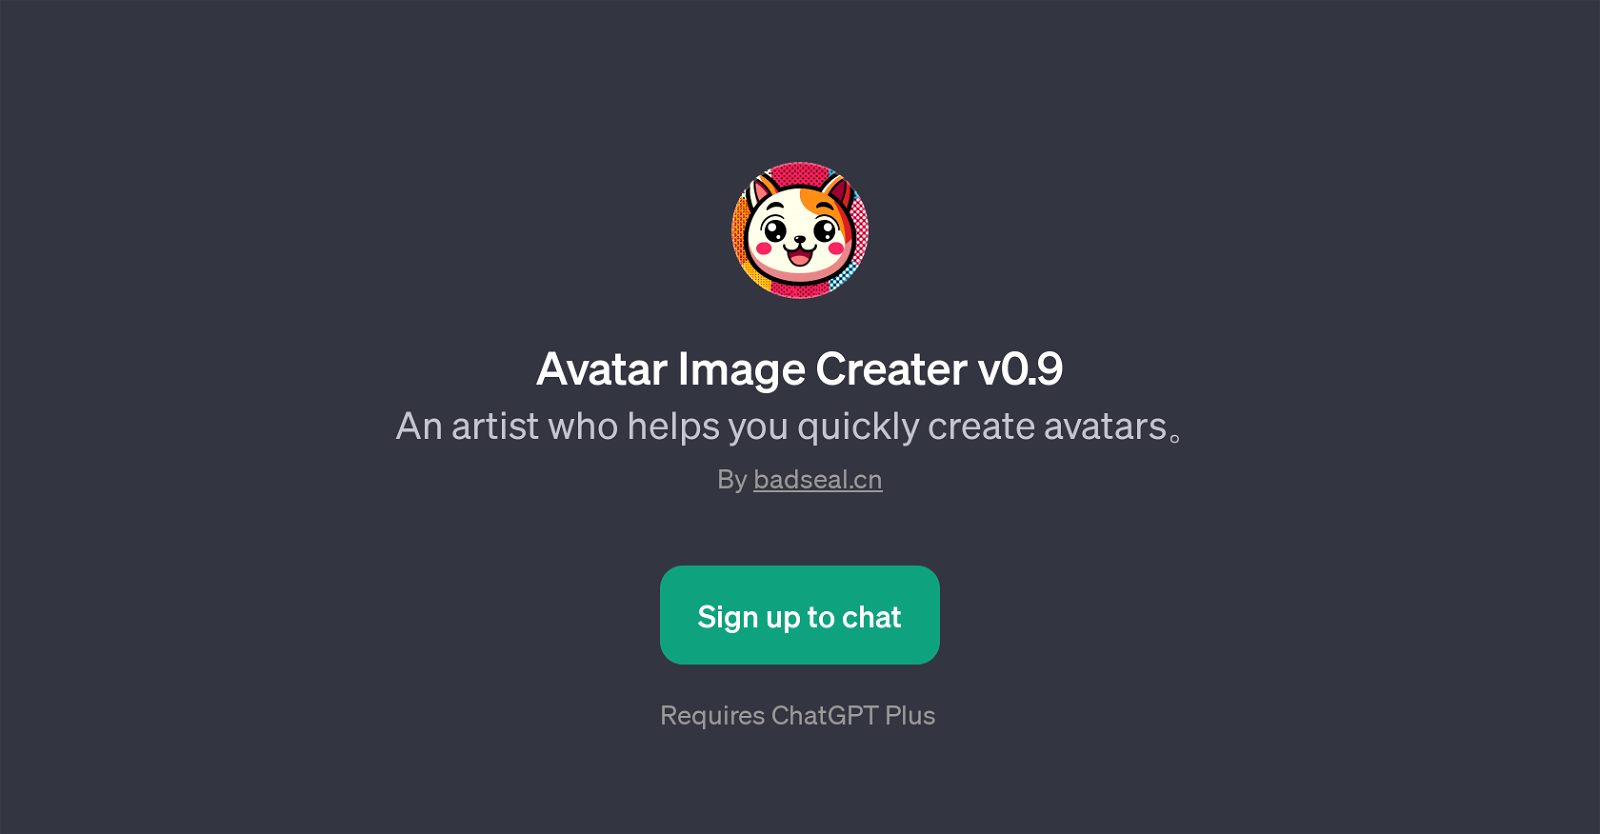 Avatar Image Creater v0.9 website